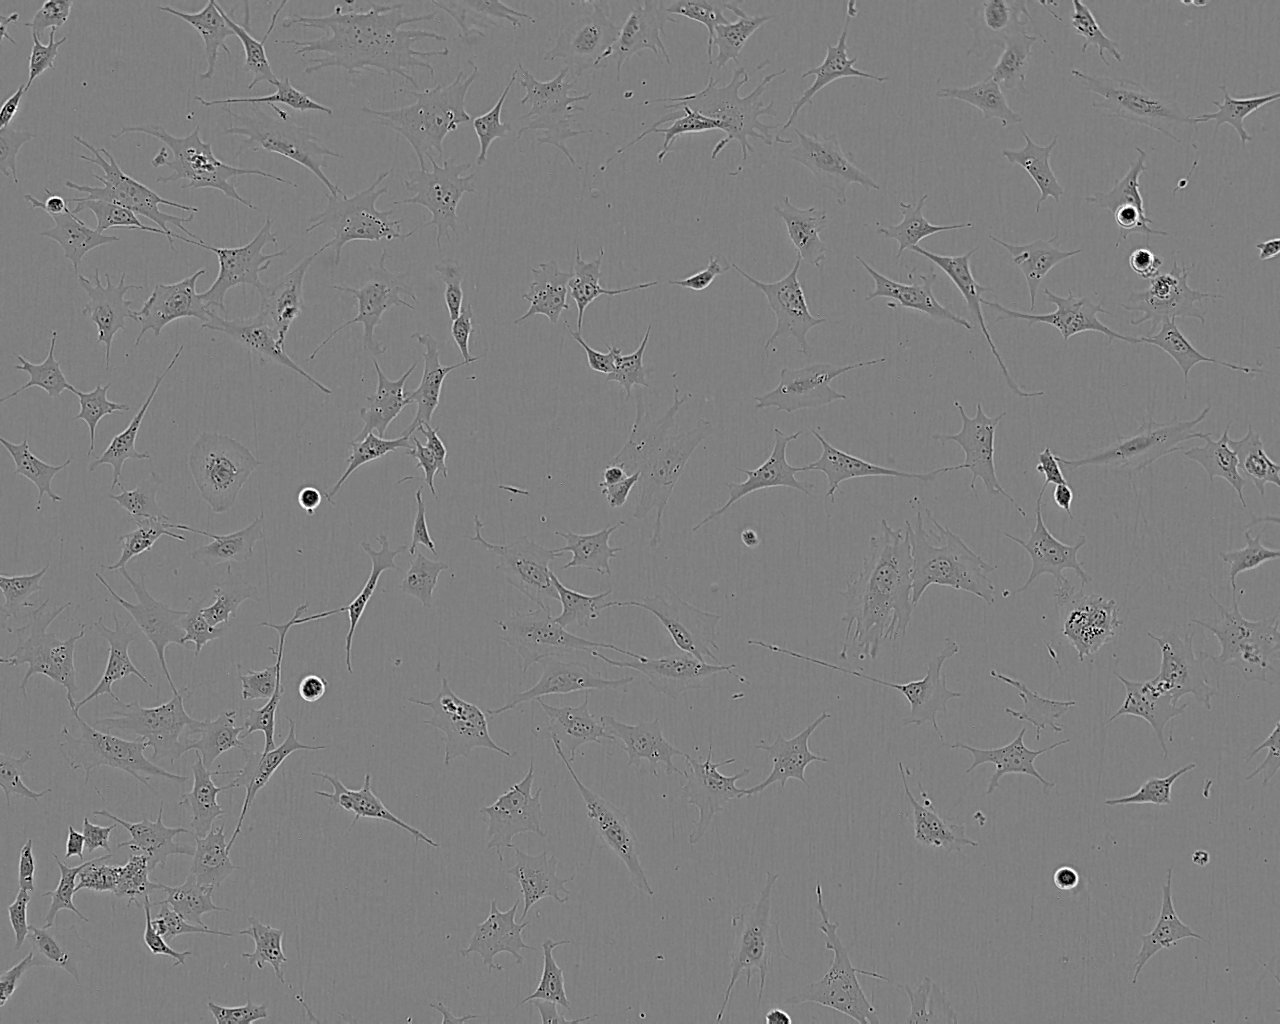 PE/CA-PJ34 (clone C12) Cell:人口腔鳞状细胞癌细胞系,PE/CA-PJ34 (clone C12) Cell